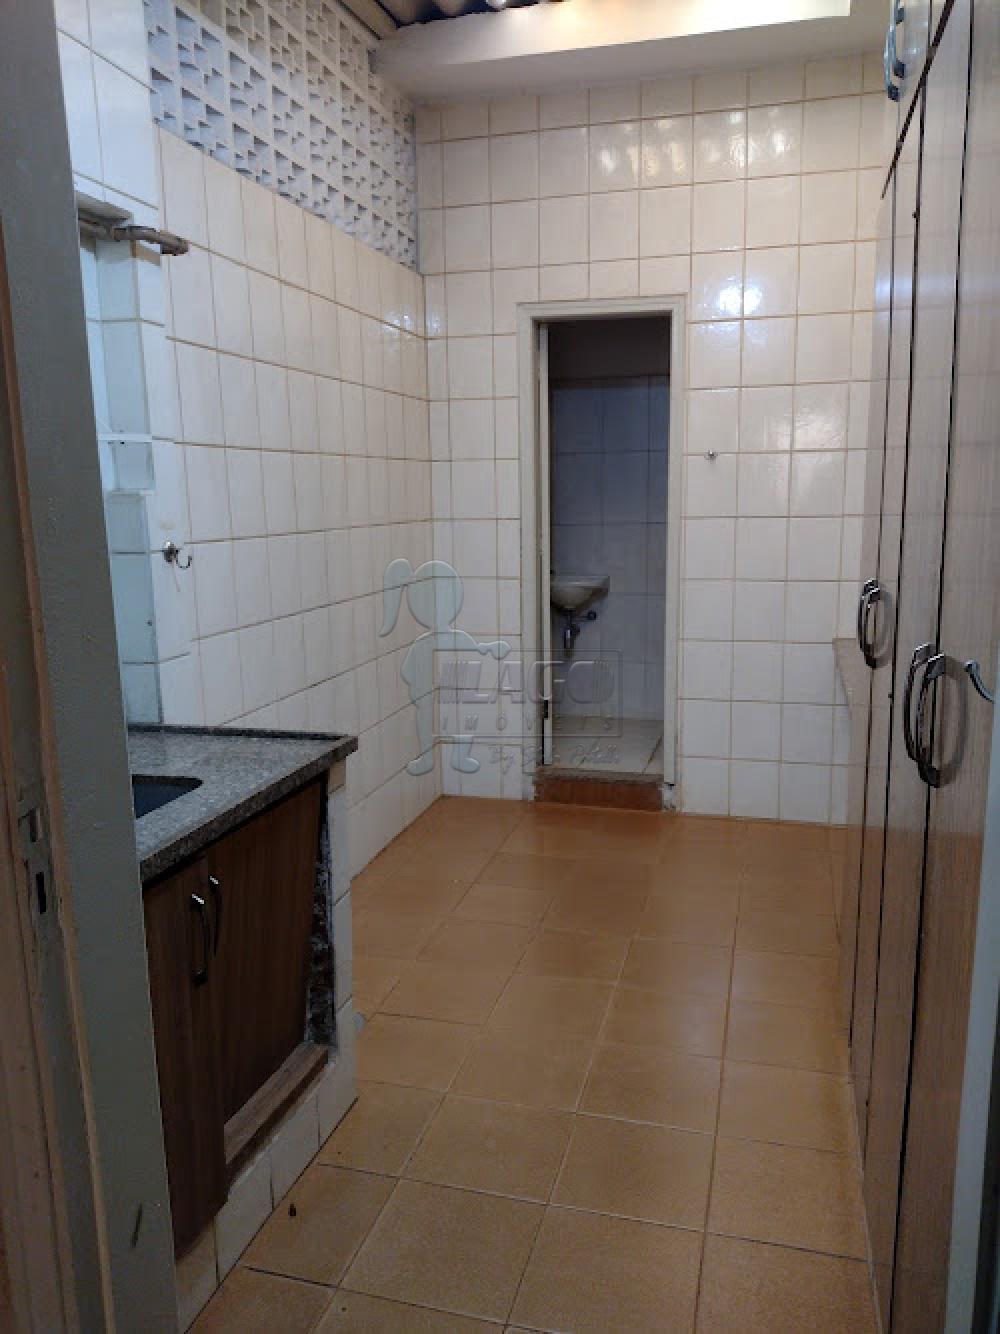 Comprar Casa / Padrão em Ribeirão Preto R$ 330.000,00 - Foto 12